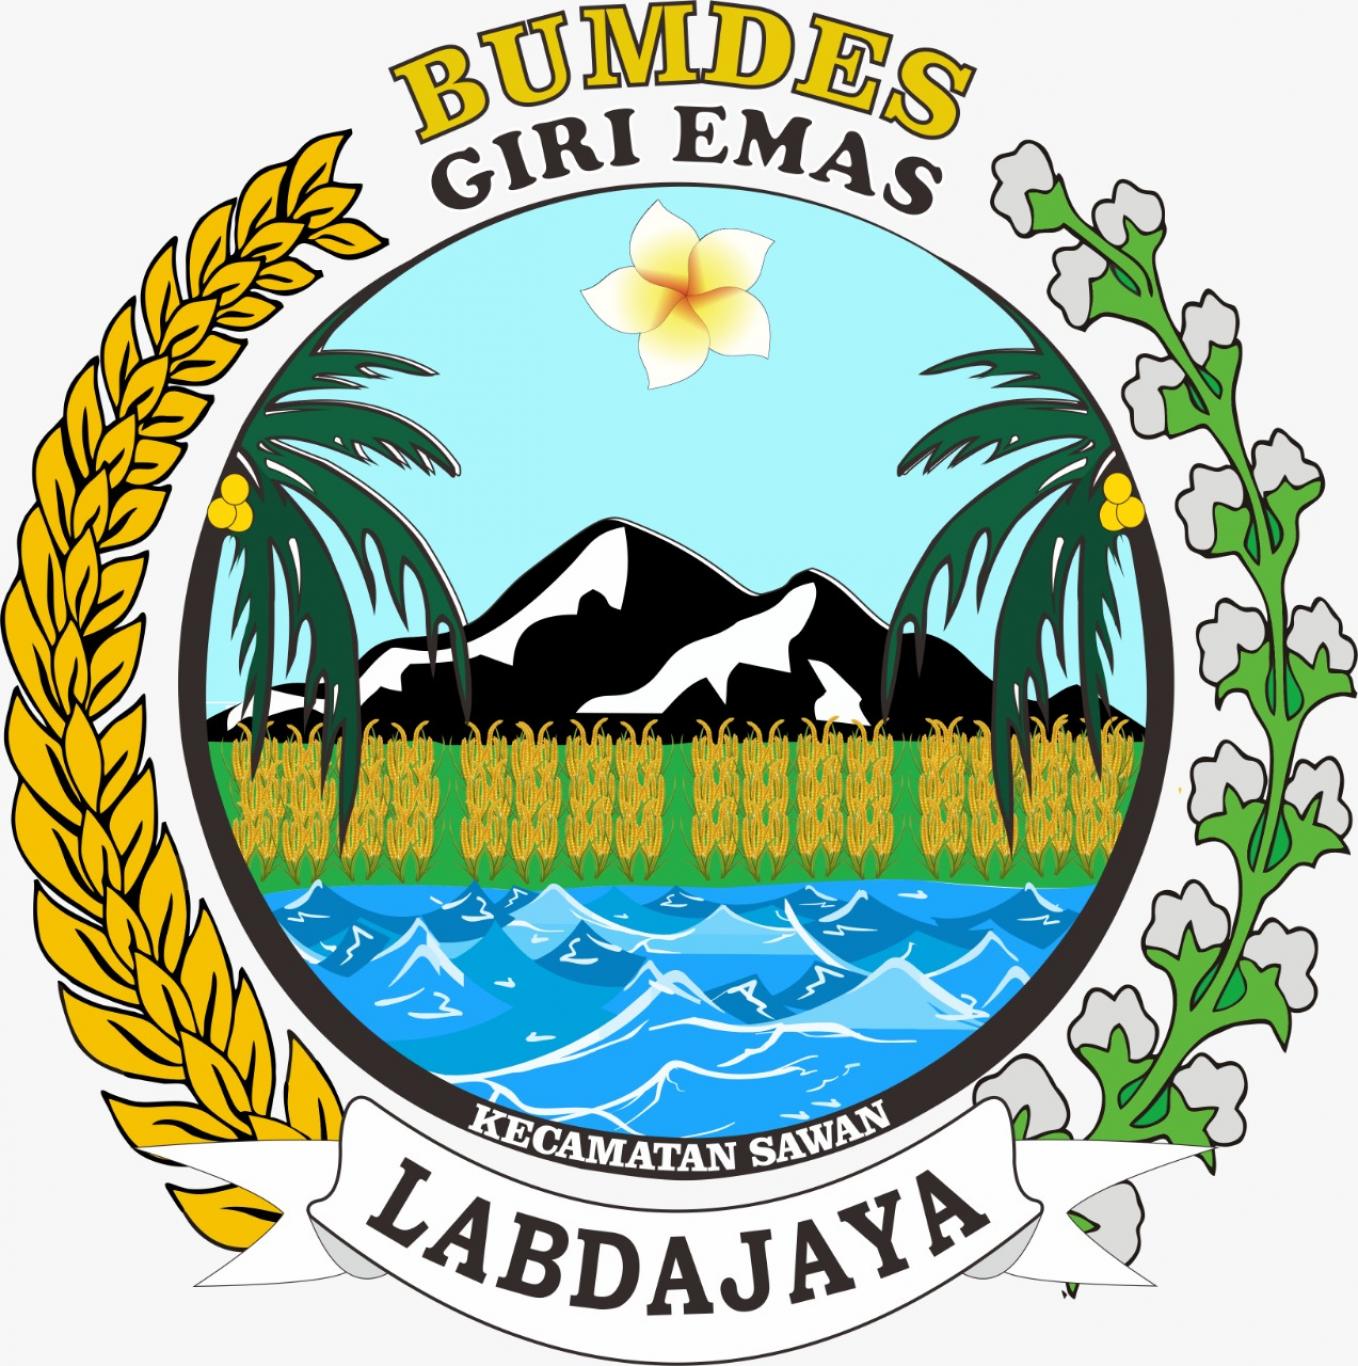 Gambar padi dan kapas pada logo koperasi indonesia melambangkan